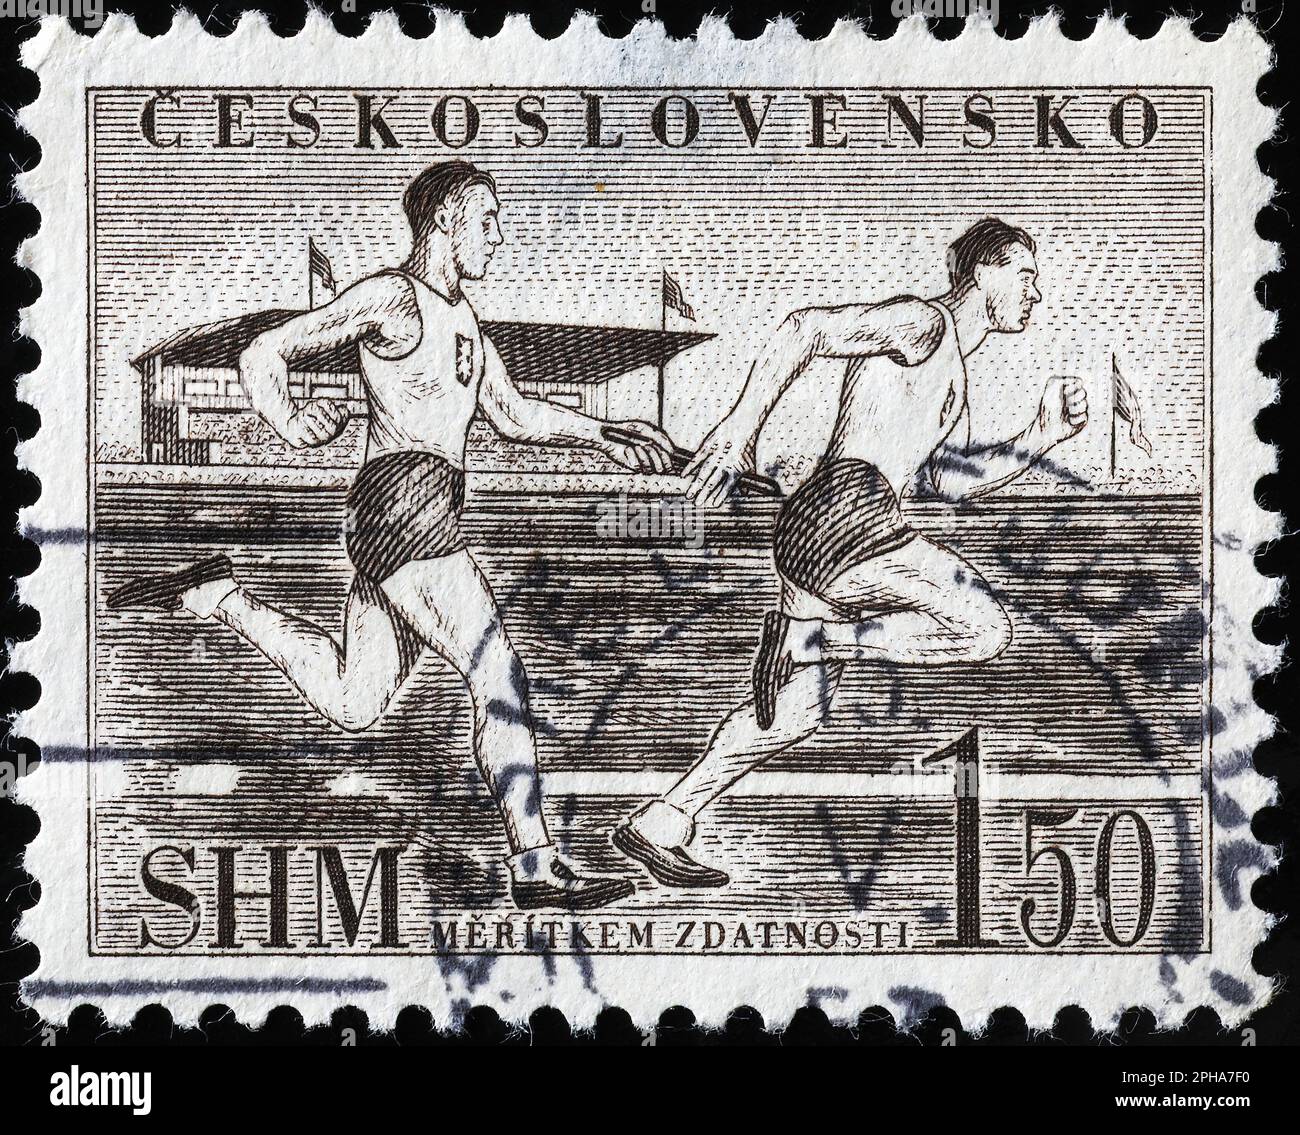 Course de relais sur l'ancien timbre-poste tchèque Banque D'Images